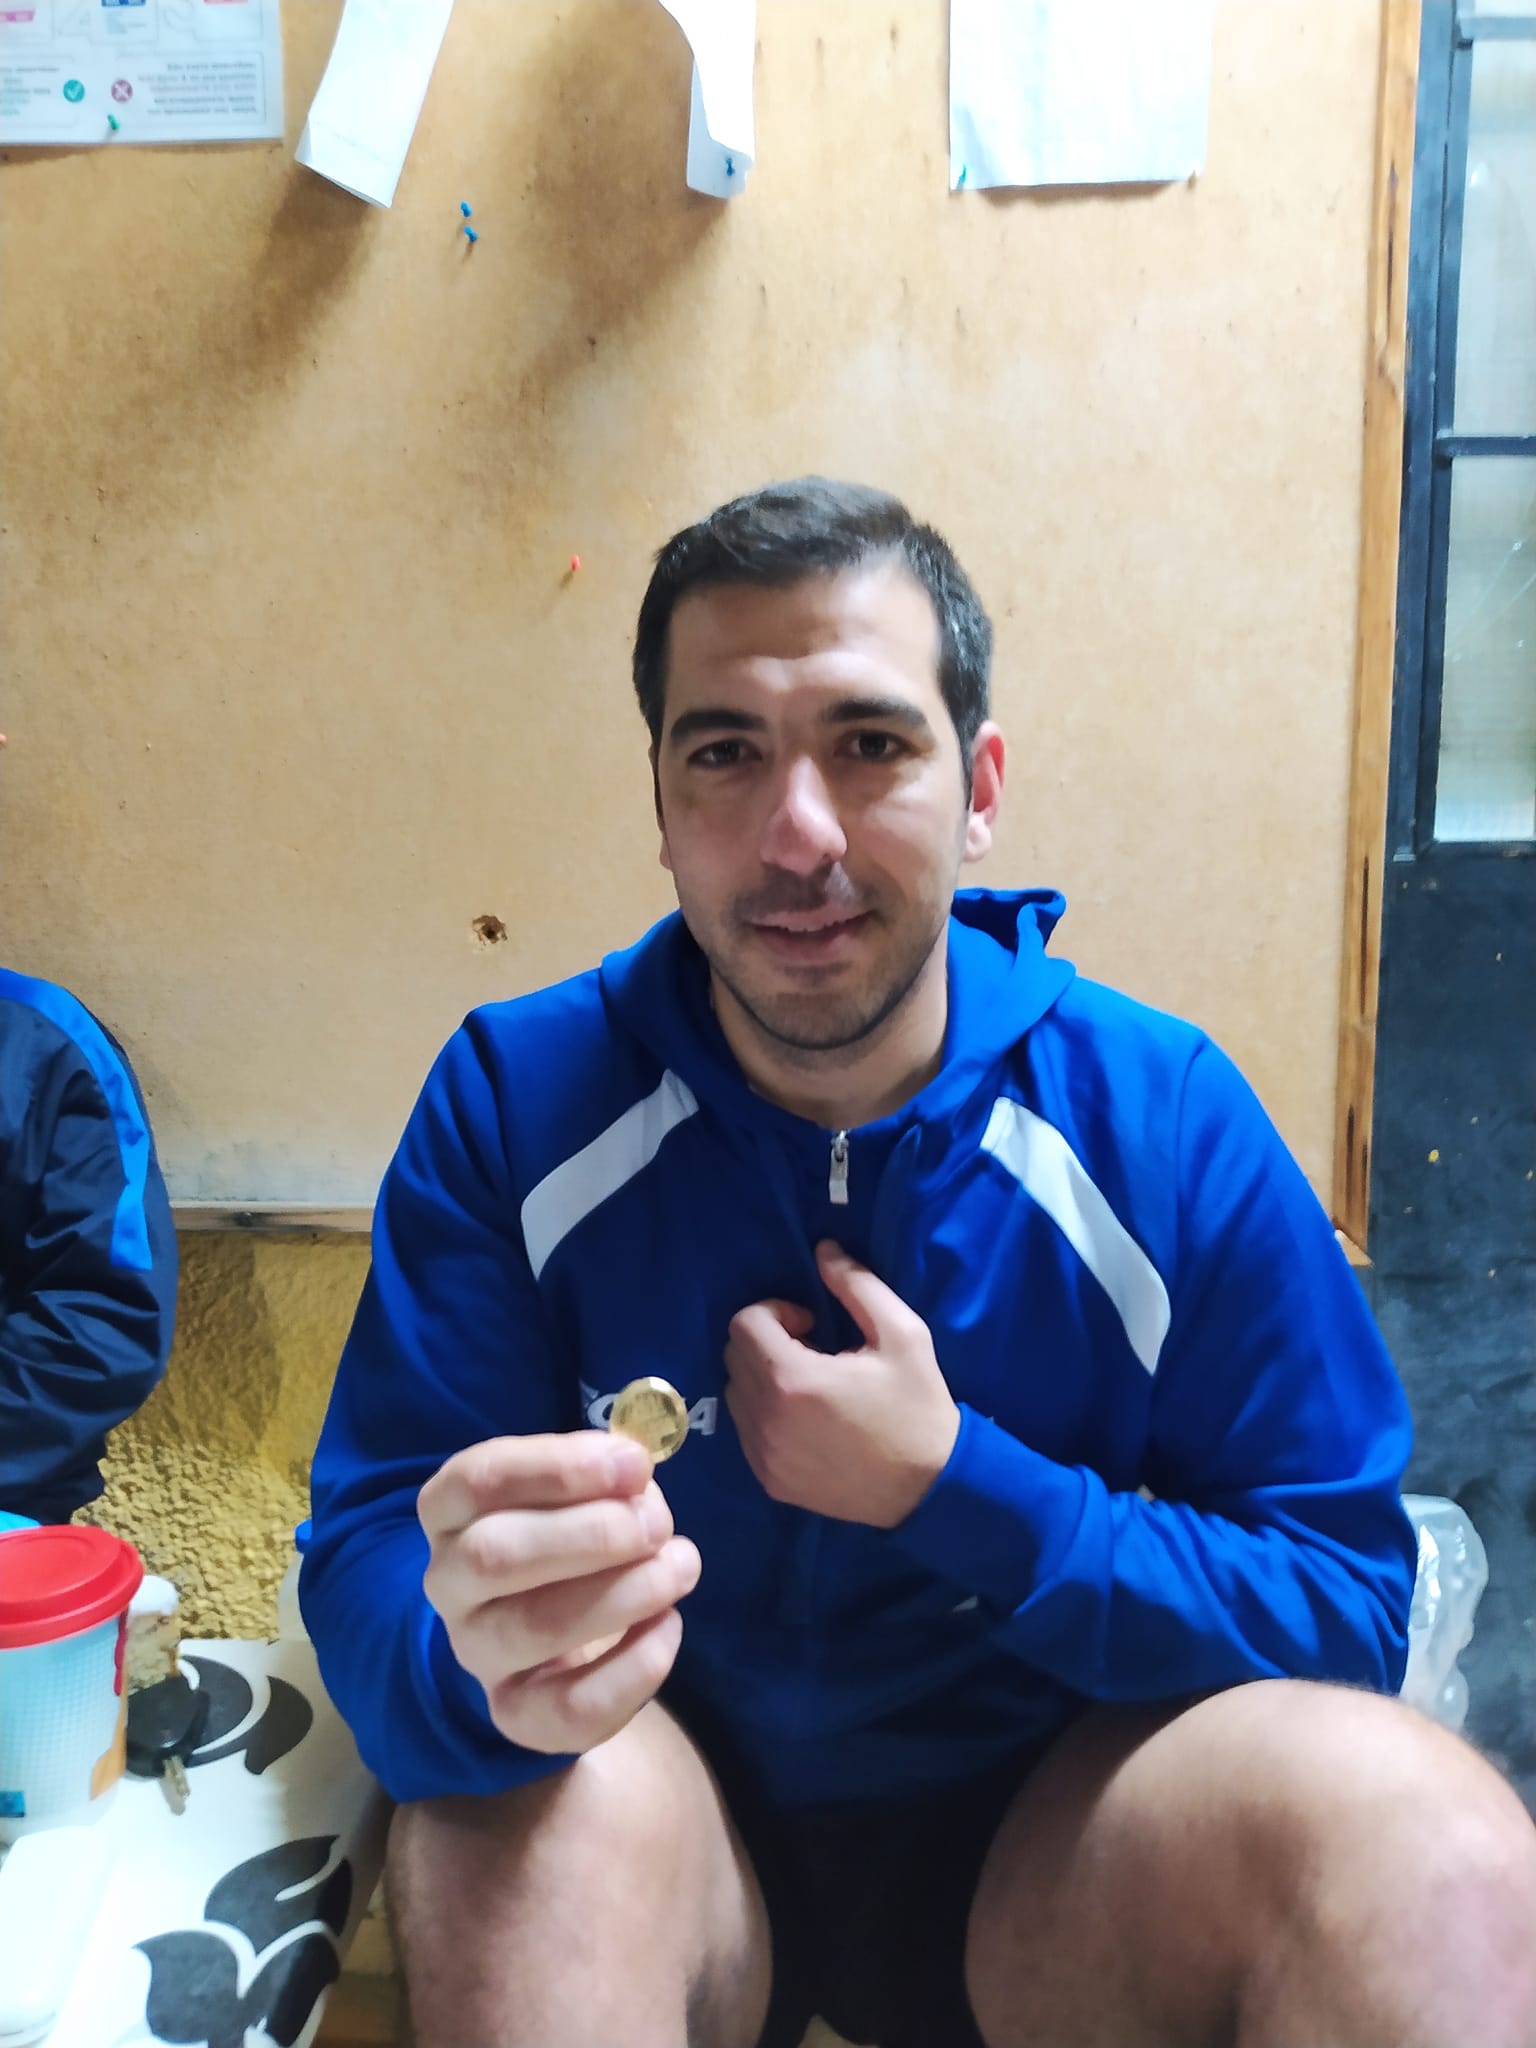 Ο Π. Μητρόπουλος βρήκε το φλουρί αλλά αποβλήθηκε στο πρώτο παιχνίδι της χρονιάς